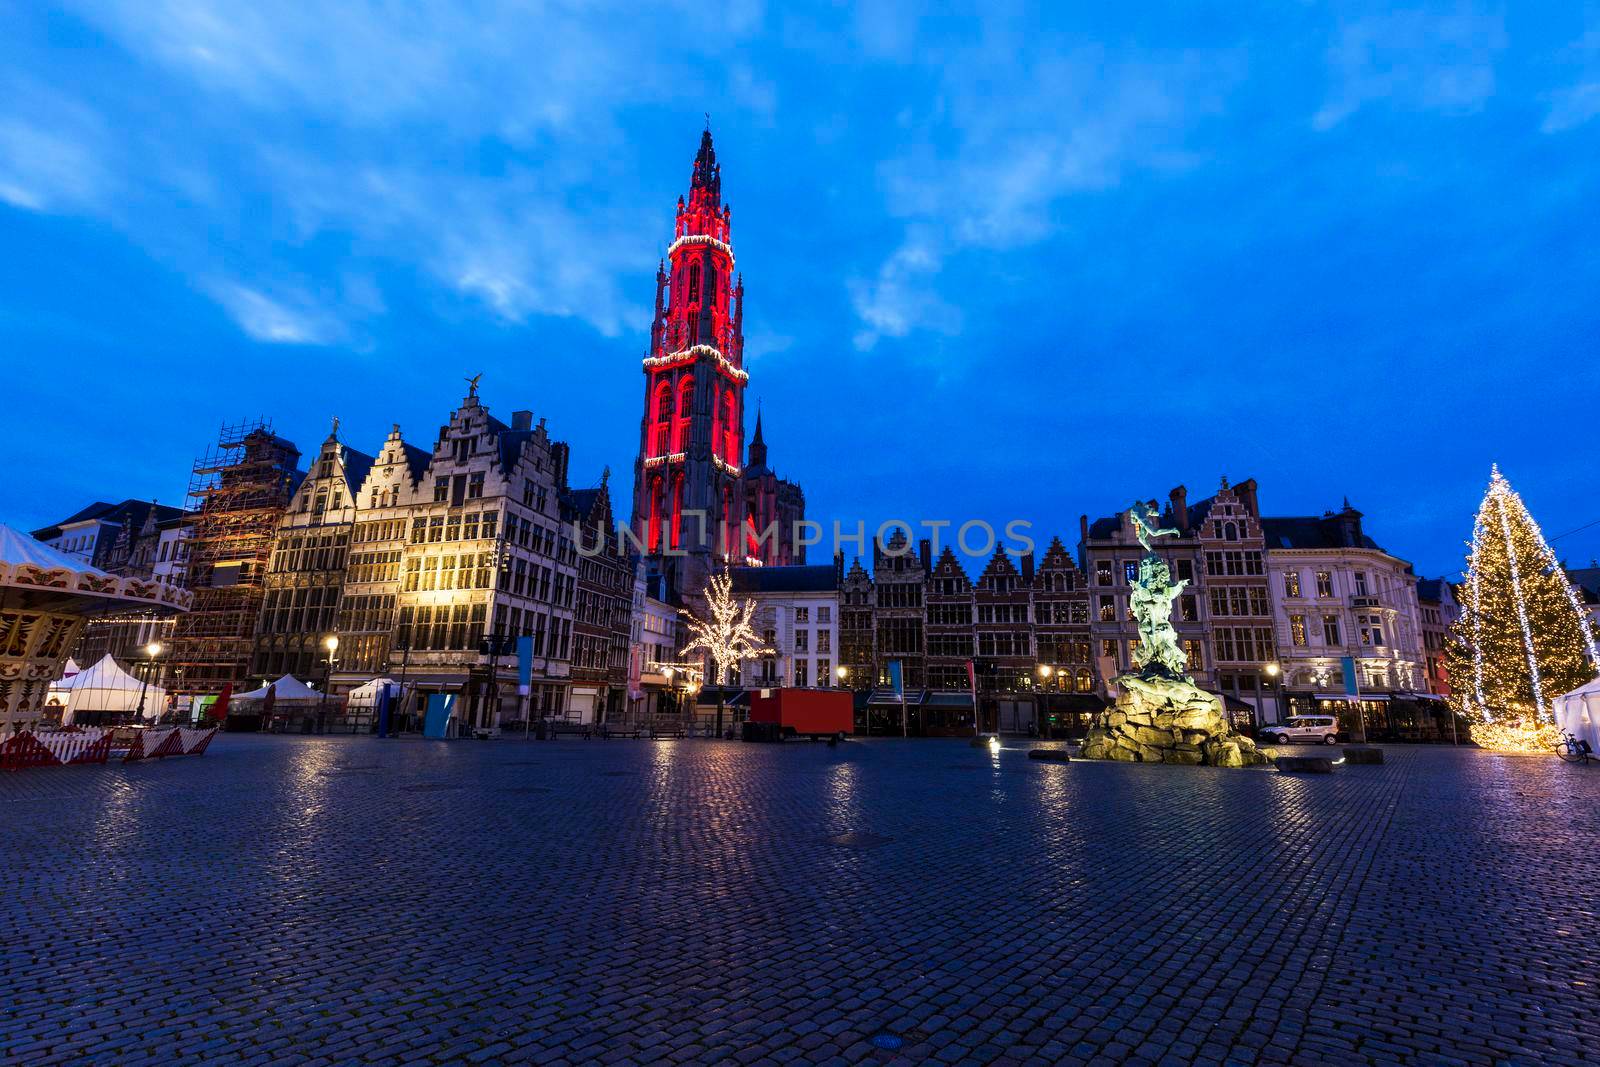 Christmas on Grote Markt in Antwerp by benkrut